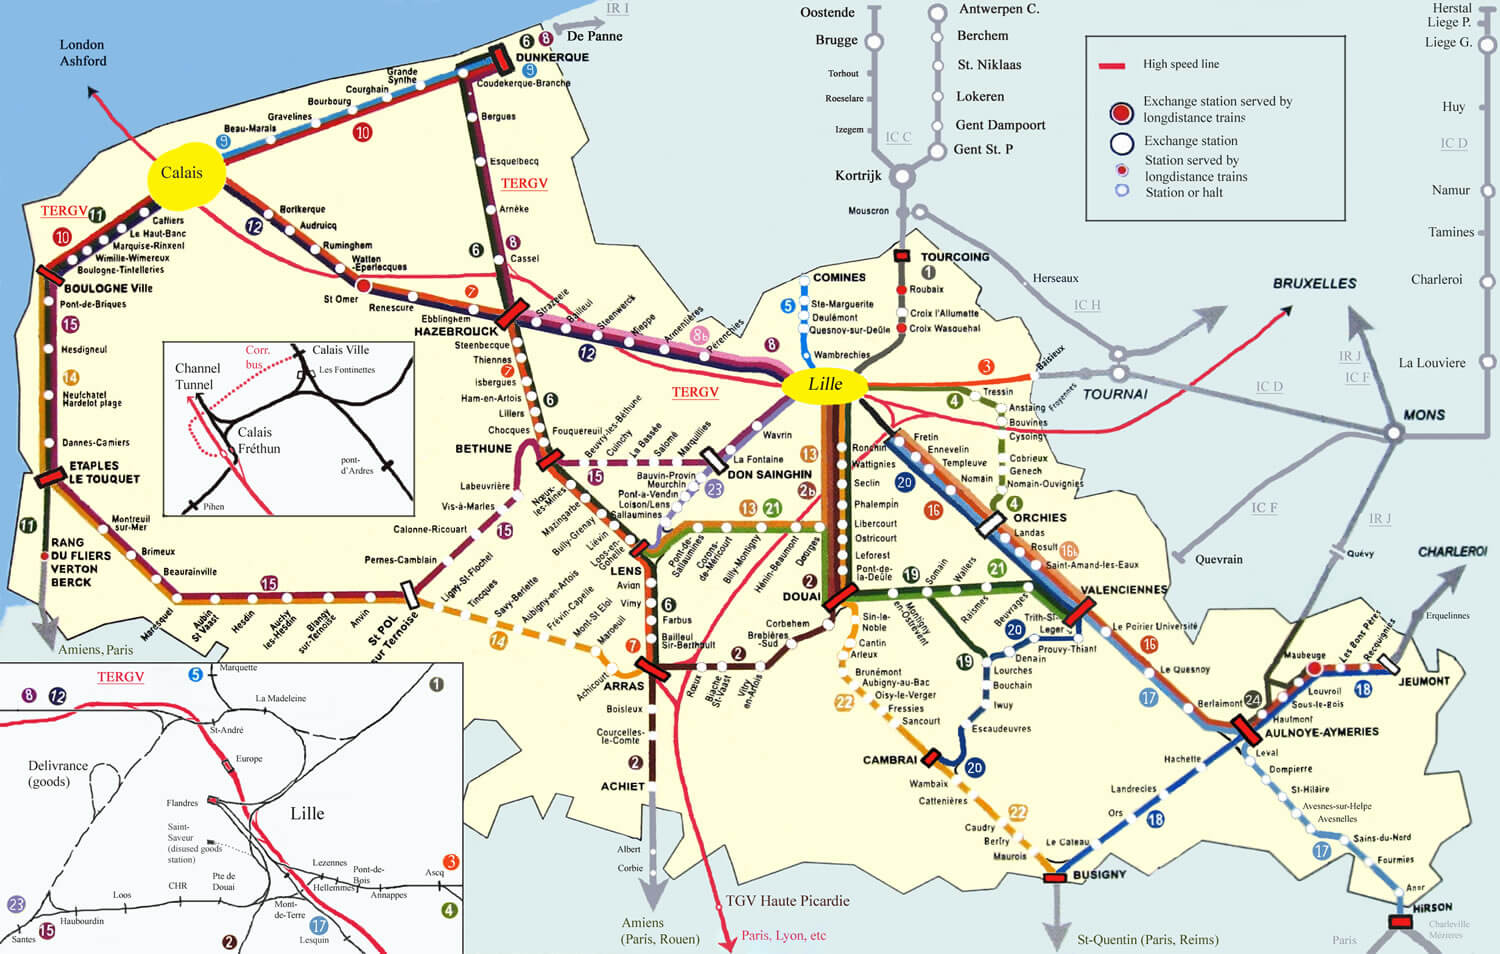 Calais metro plan